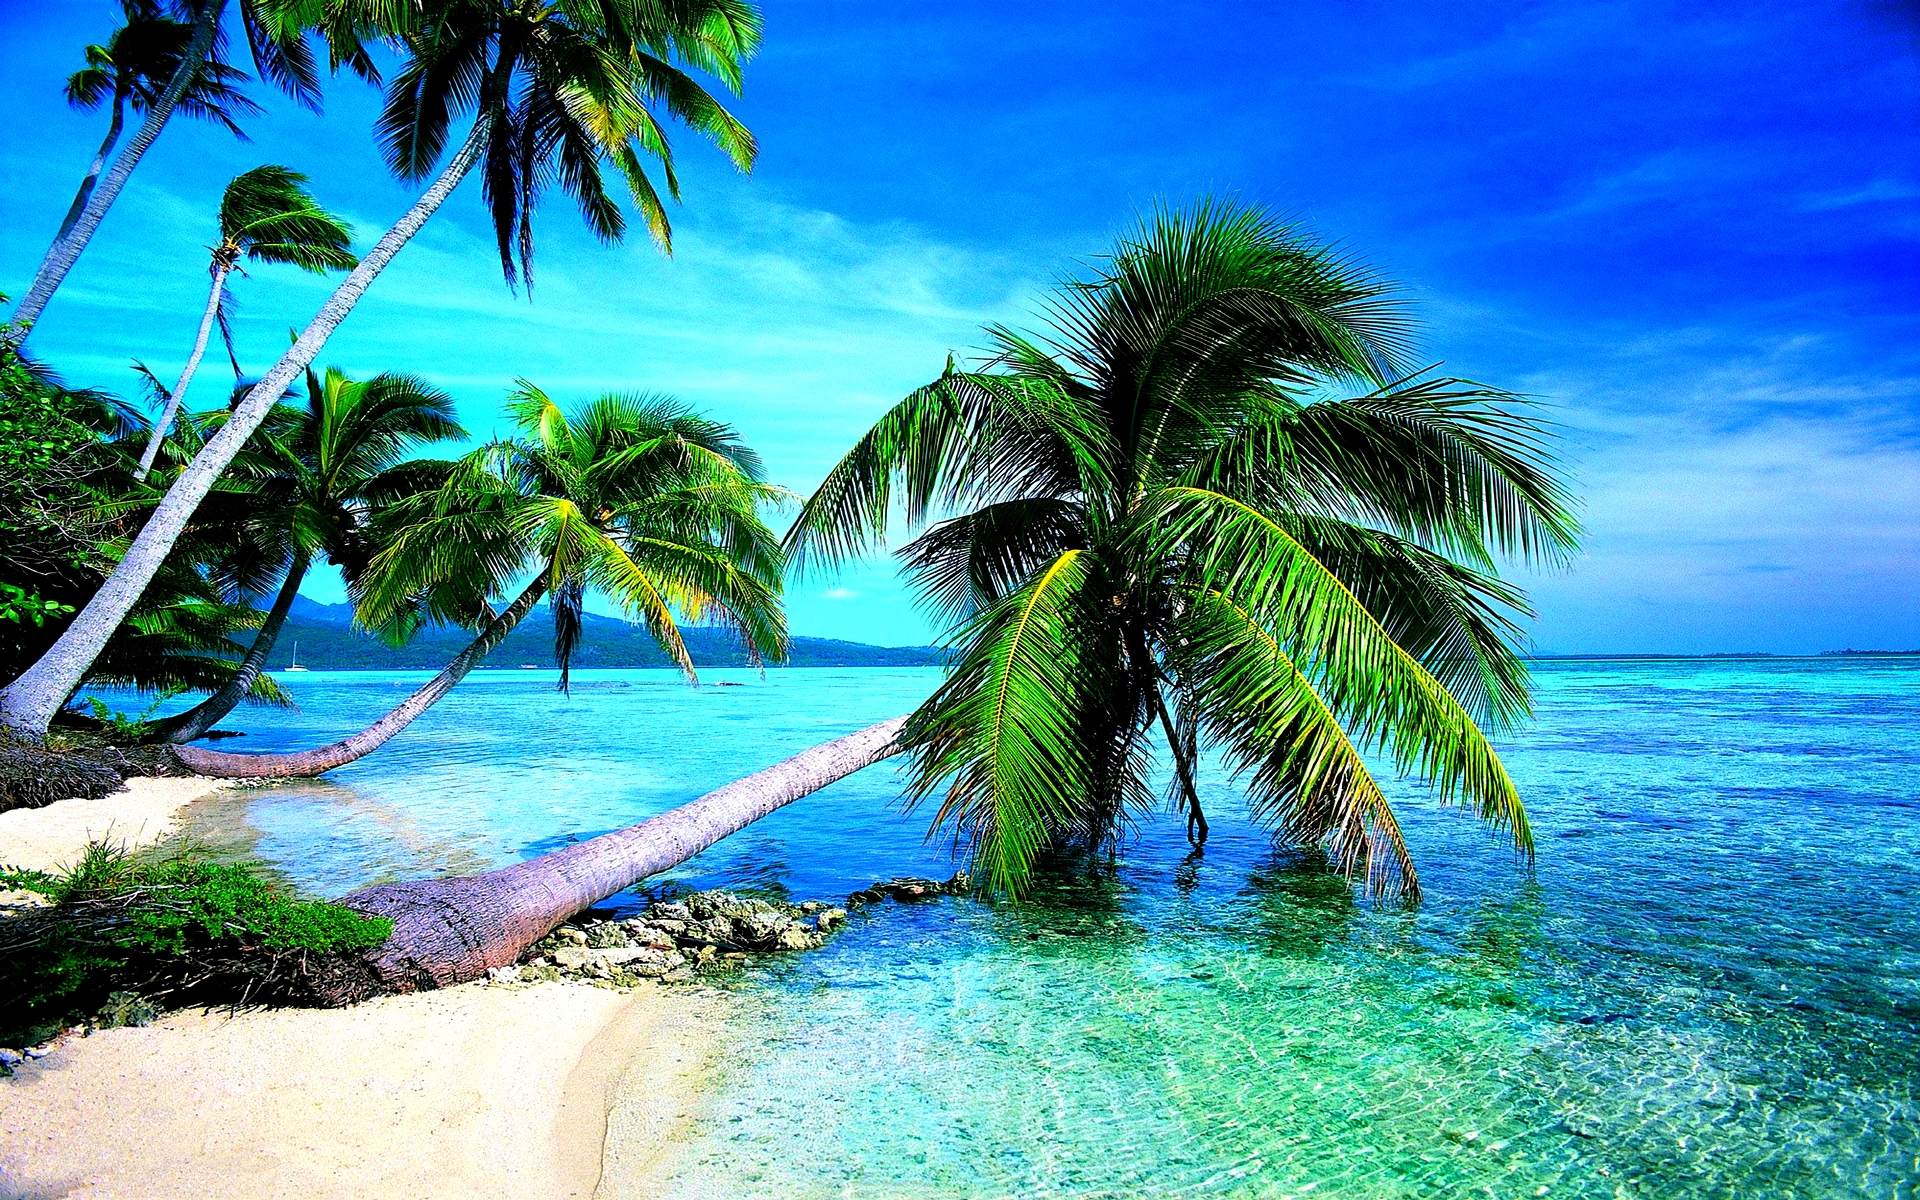 Скачать обои бесплатно Море, Пляж, Пальмы, Горизонт, Океан, Тропический, Земля/природа картинка на рабочий стол ПК